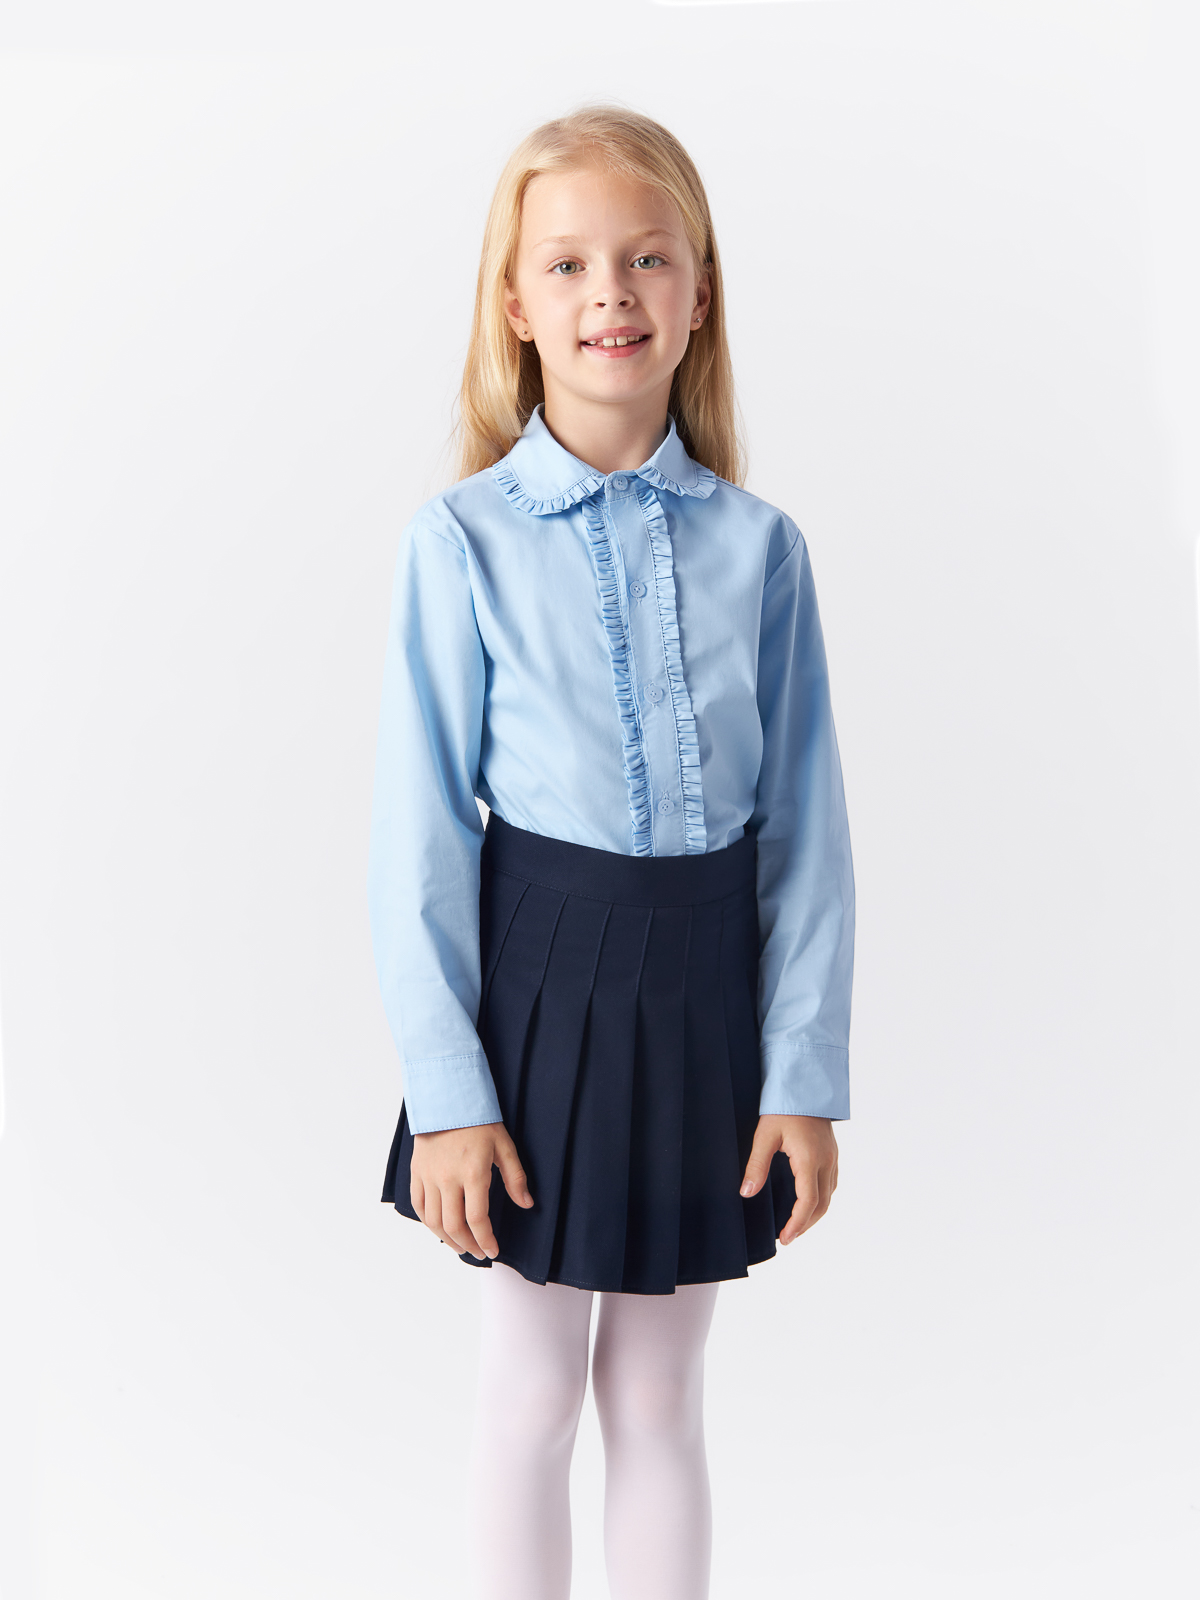 Блузка Yiwu Xflot Supply Chain детская, BS-2blue, размер 160 см блузка трикотажная школьная белая button blue 158